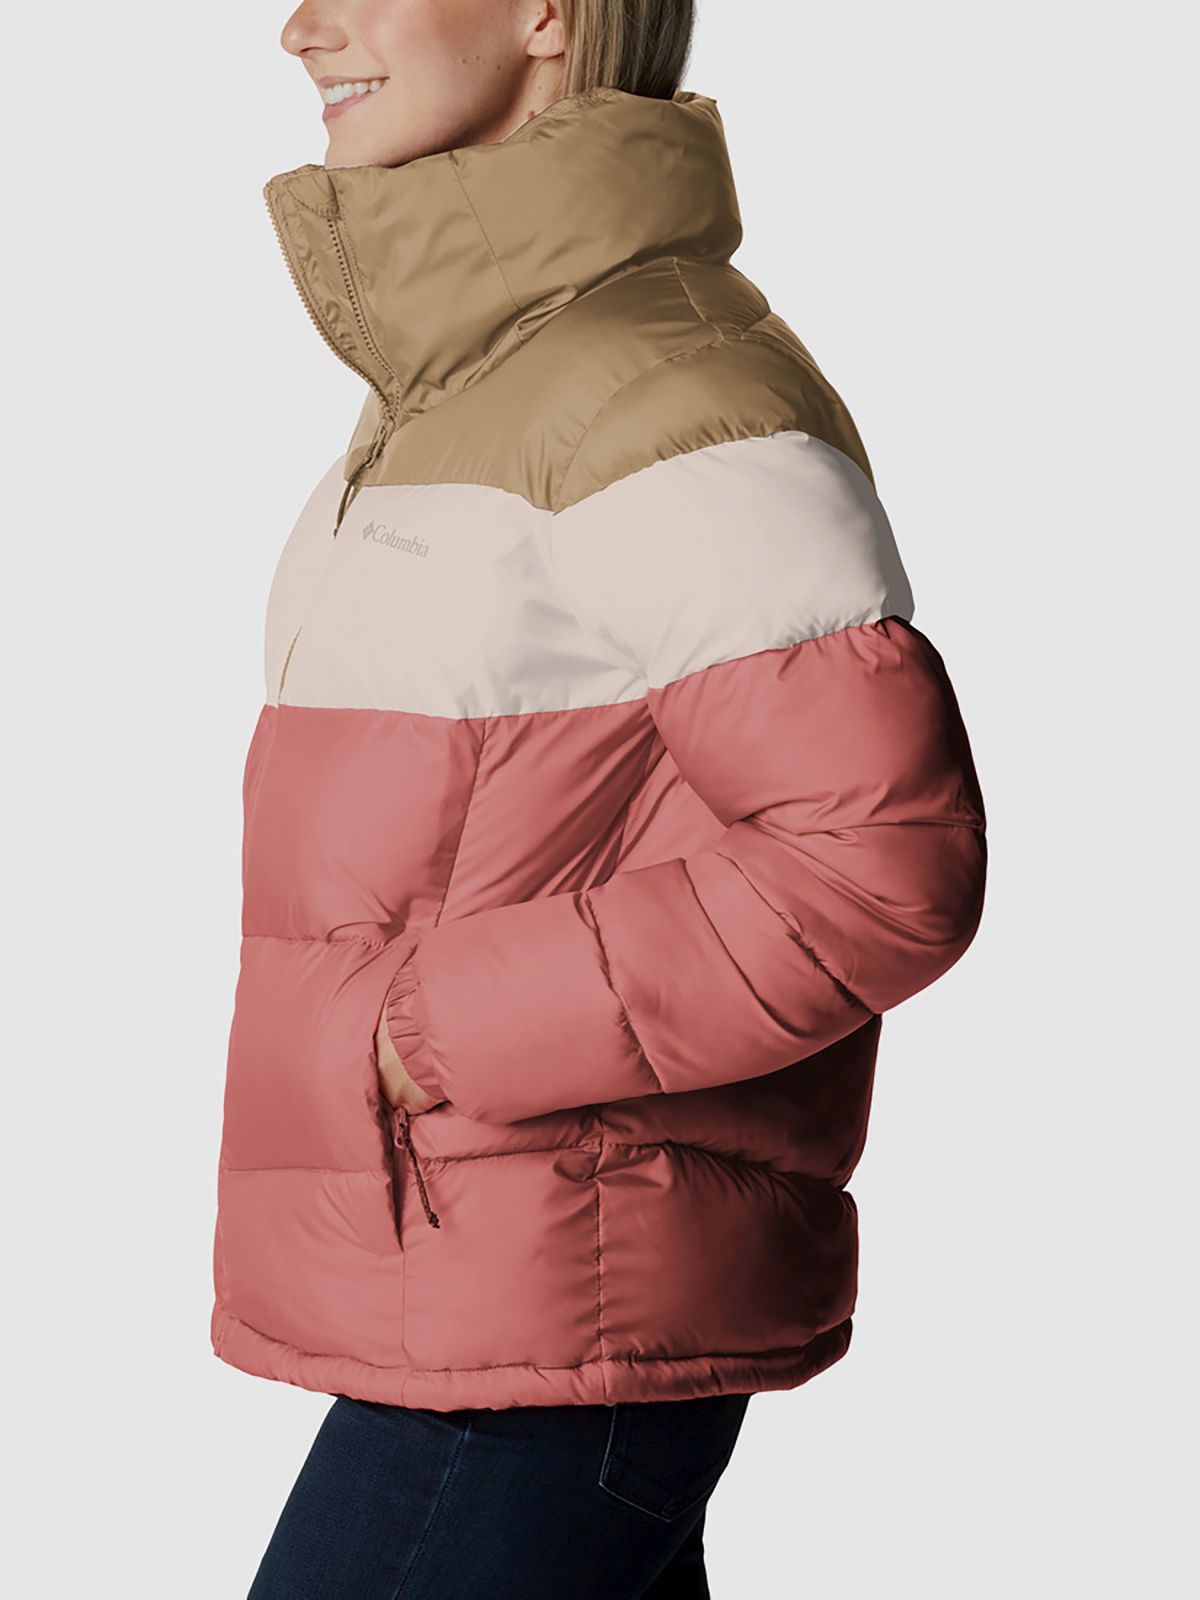  מעיל פאפר עם צווארון גבוה ולוגו של COLUMBIA